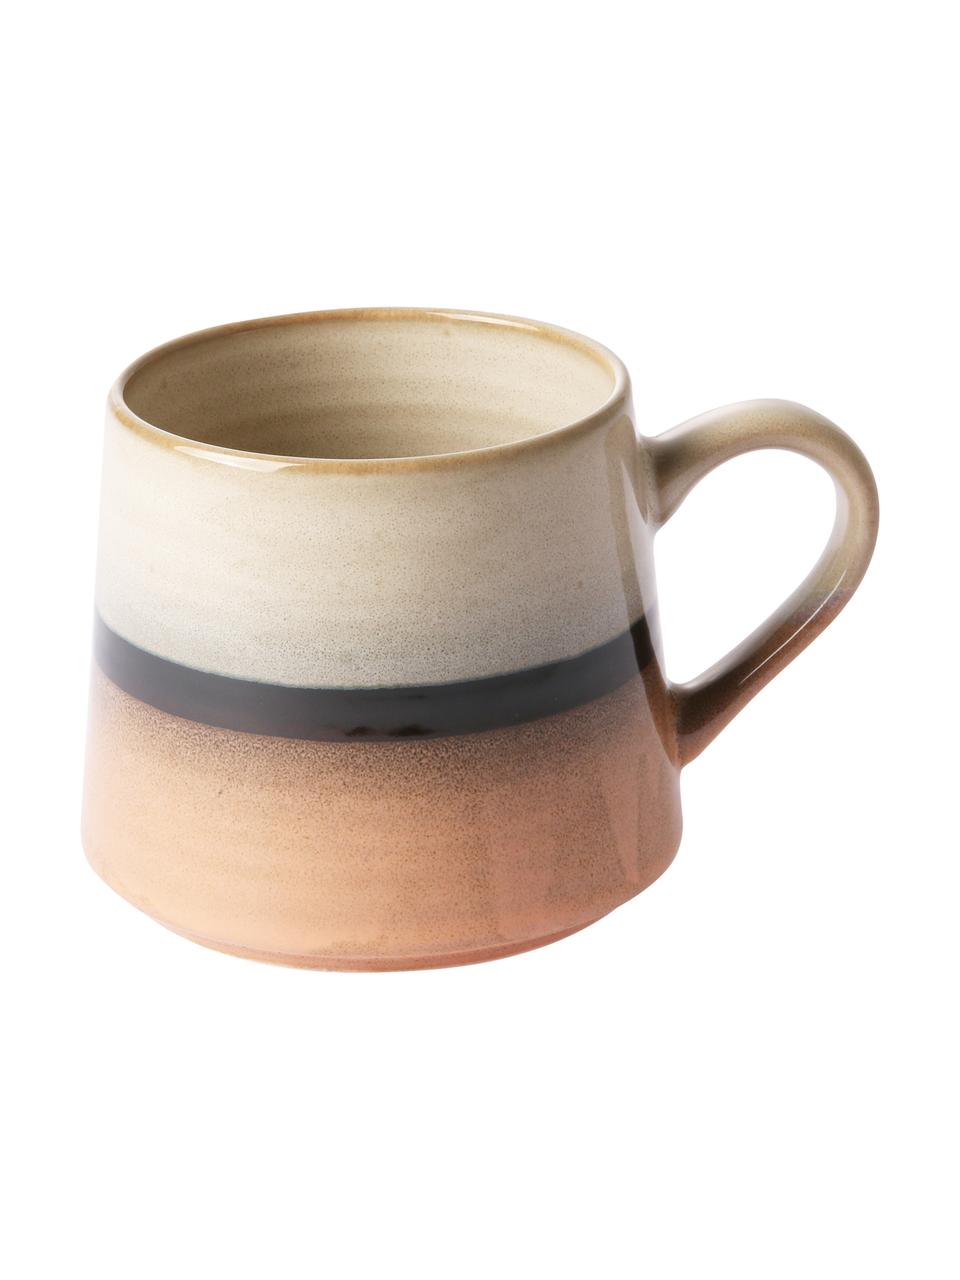 Handgemachte Teetasse 70's im Retro Style, Keramik, Pfirsichfarben, Grau, Schwarz, 11 x 9 cm